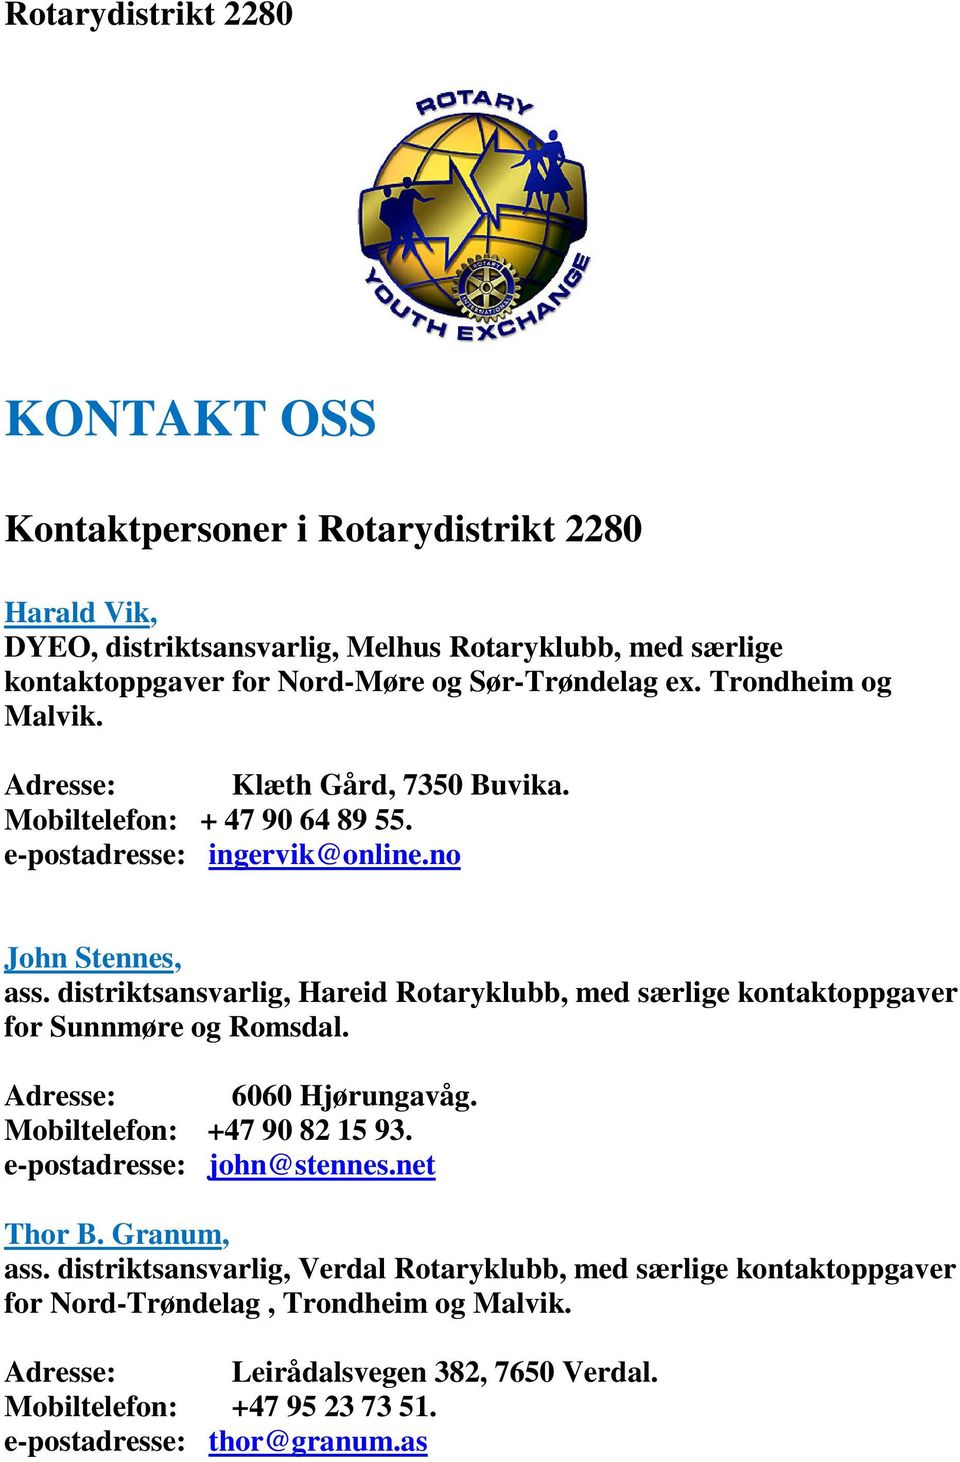 distriktsansvarlig, Hareid Rotaryklubb, med særlige kontaktoppgaver for Sunnmøre og Romsdal. Adresse: 6060 Hjørungavåg. Mobiltelefon: +47 90 82 15 93. e-postadresse: john@stennes.